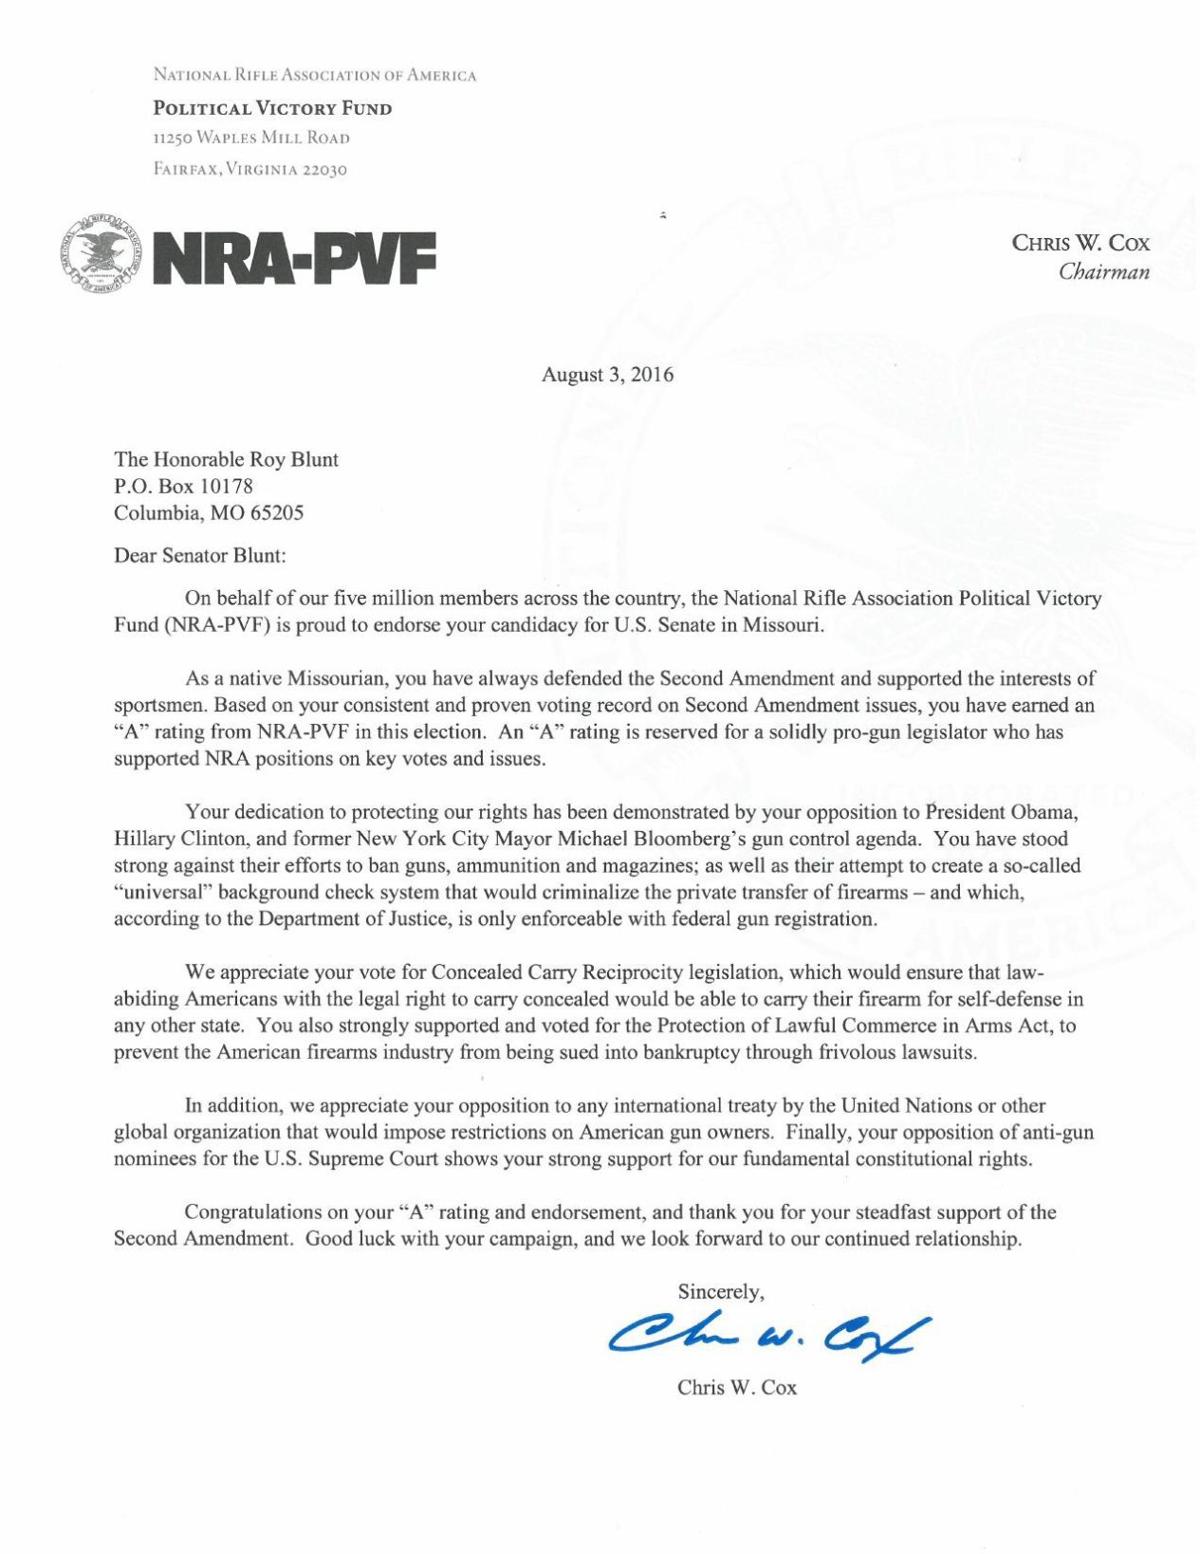 NRA letter endorsing Roy Blunt for Senate re-election | | 0